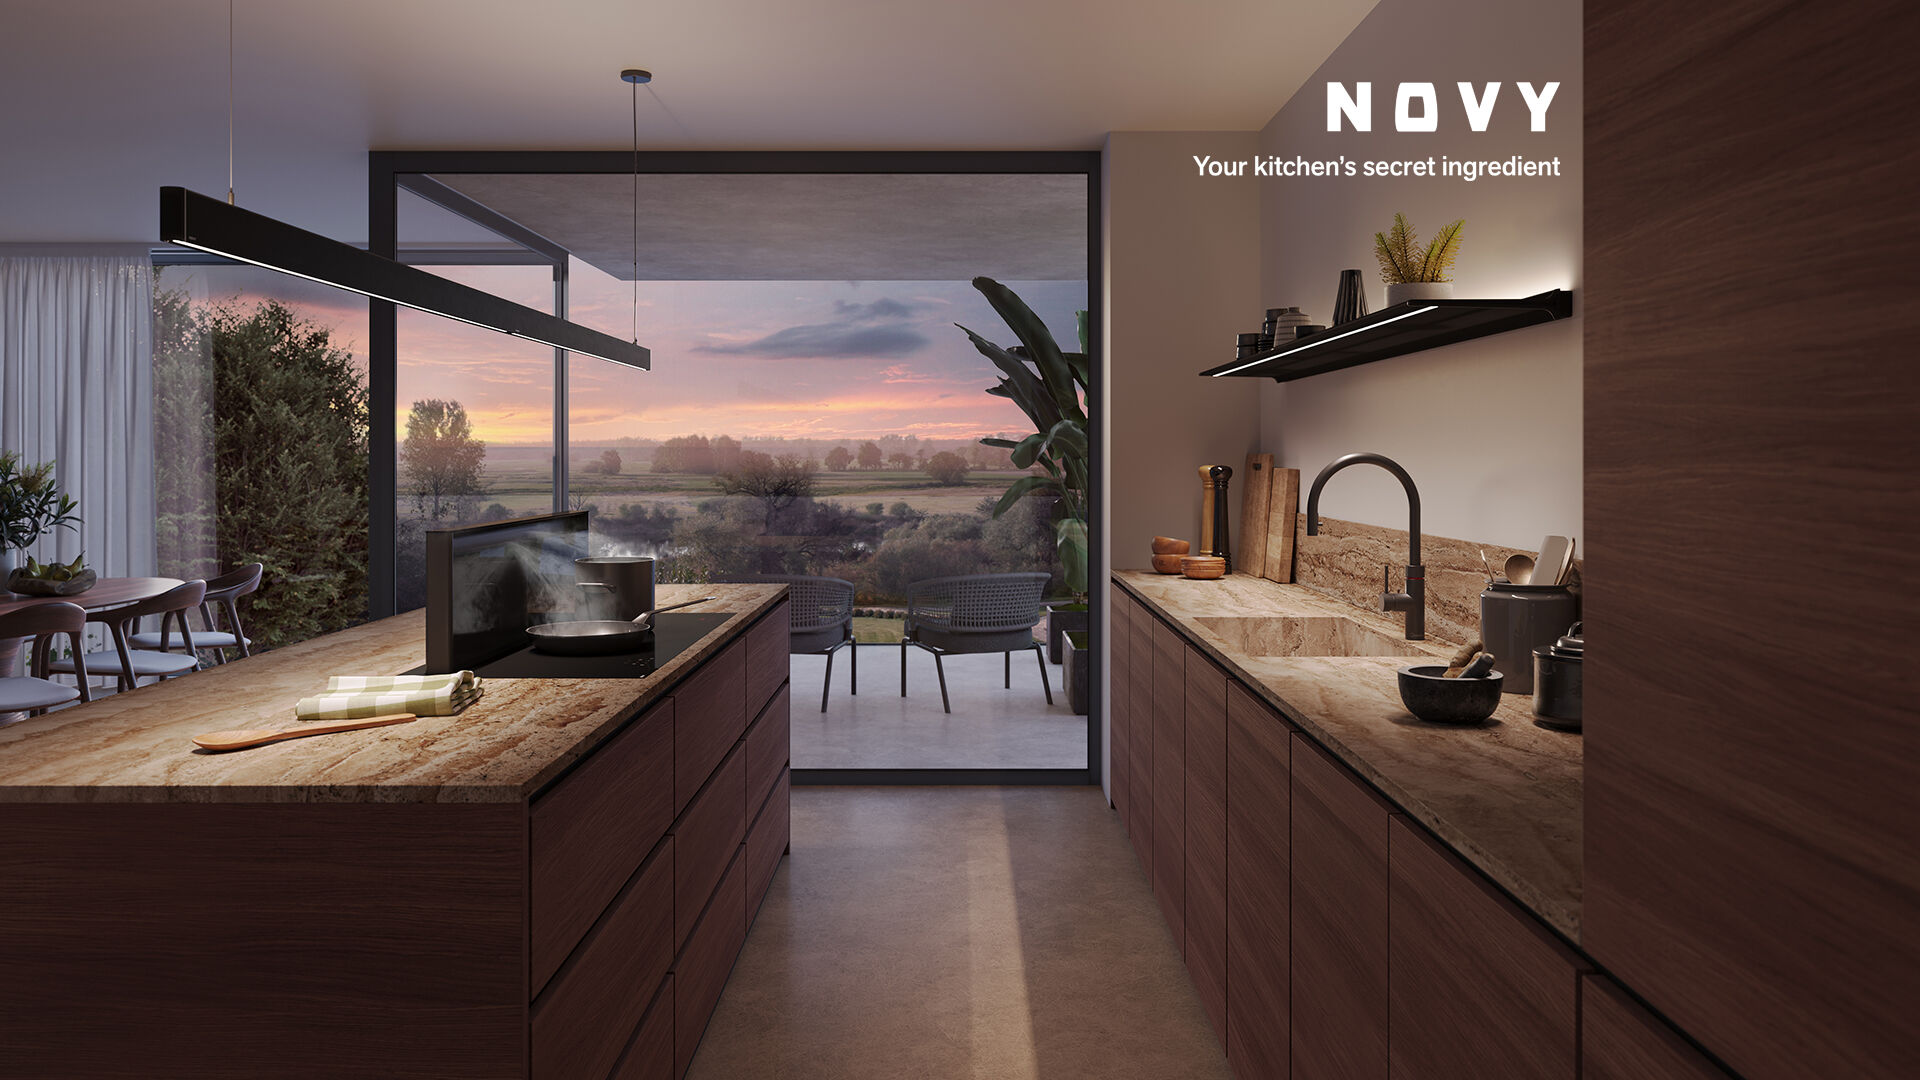 Novy révolutionne l’éclairage de votre cuisine